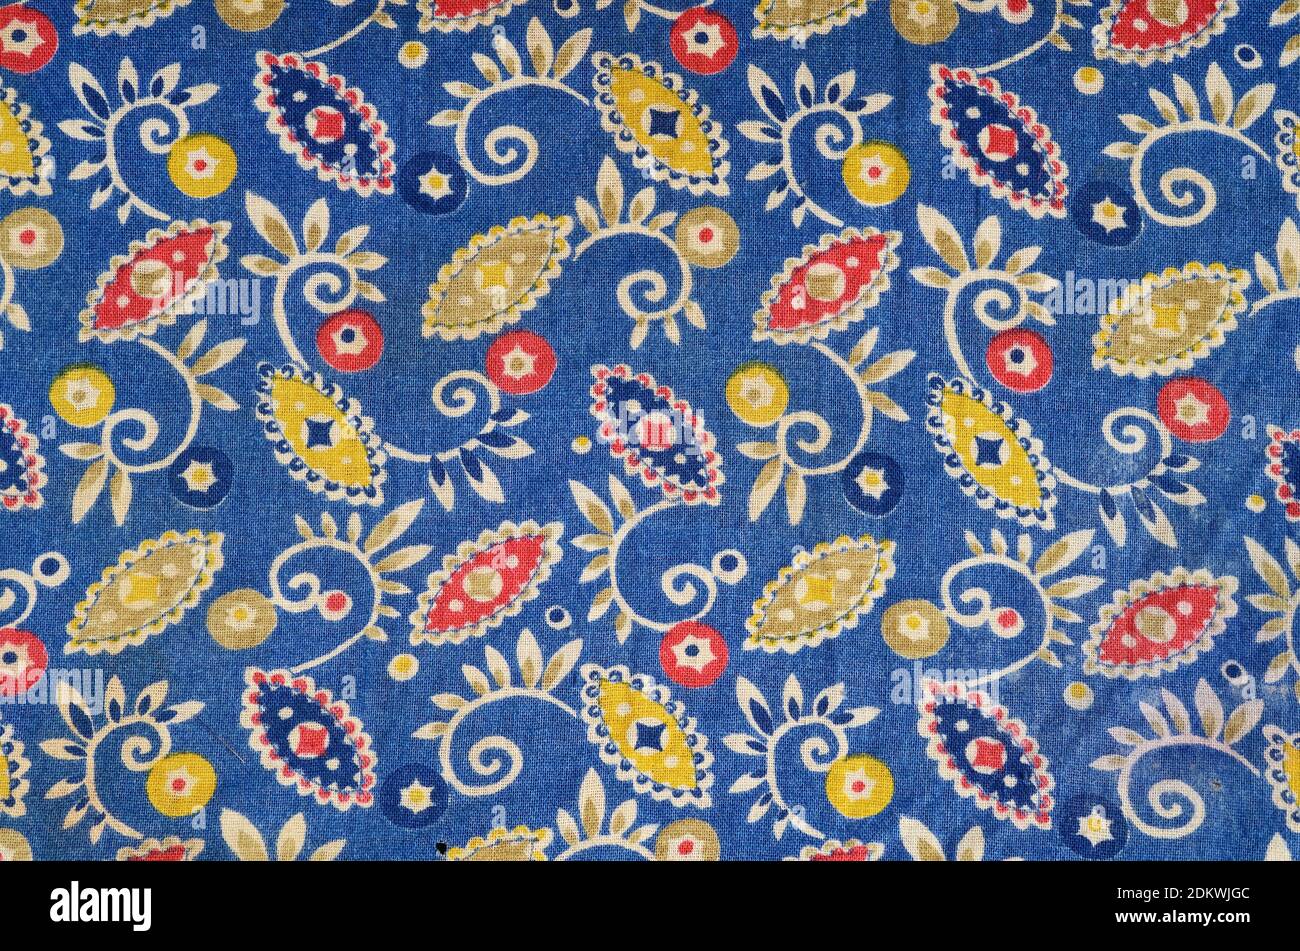 Toile de fond peinte par le motif folklorique abstrait en bleu, jaune et rouge Banque D'Images